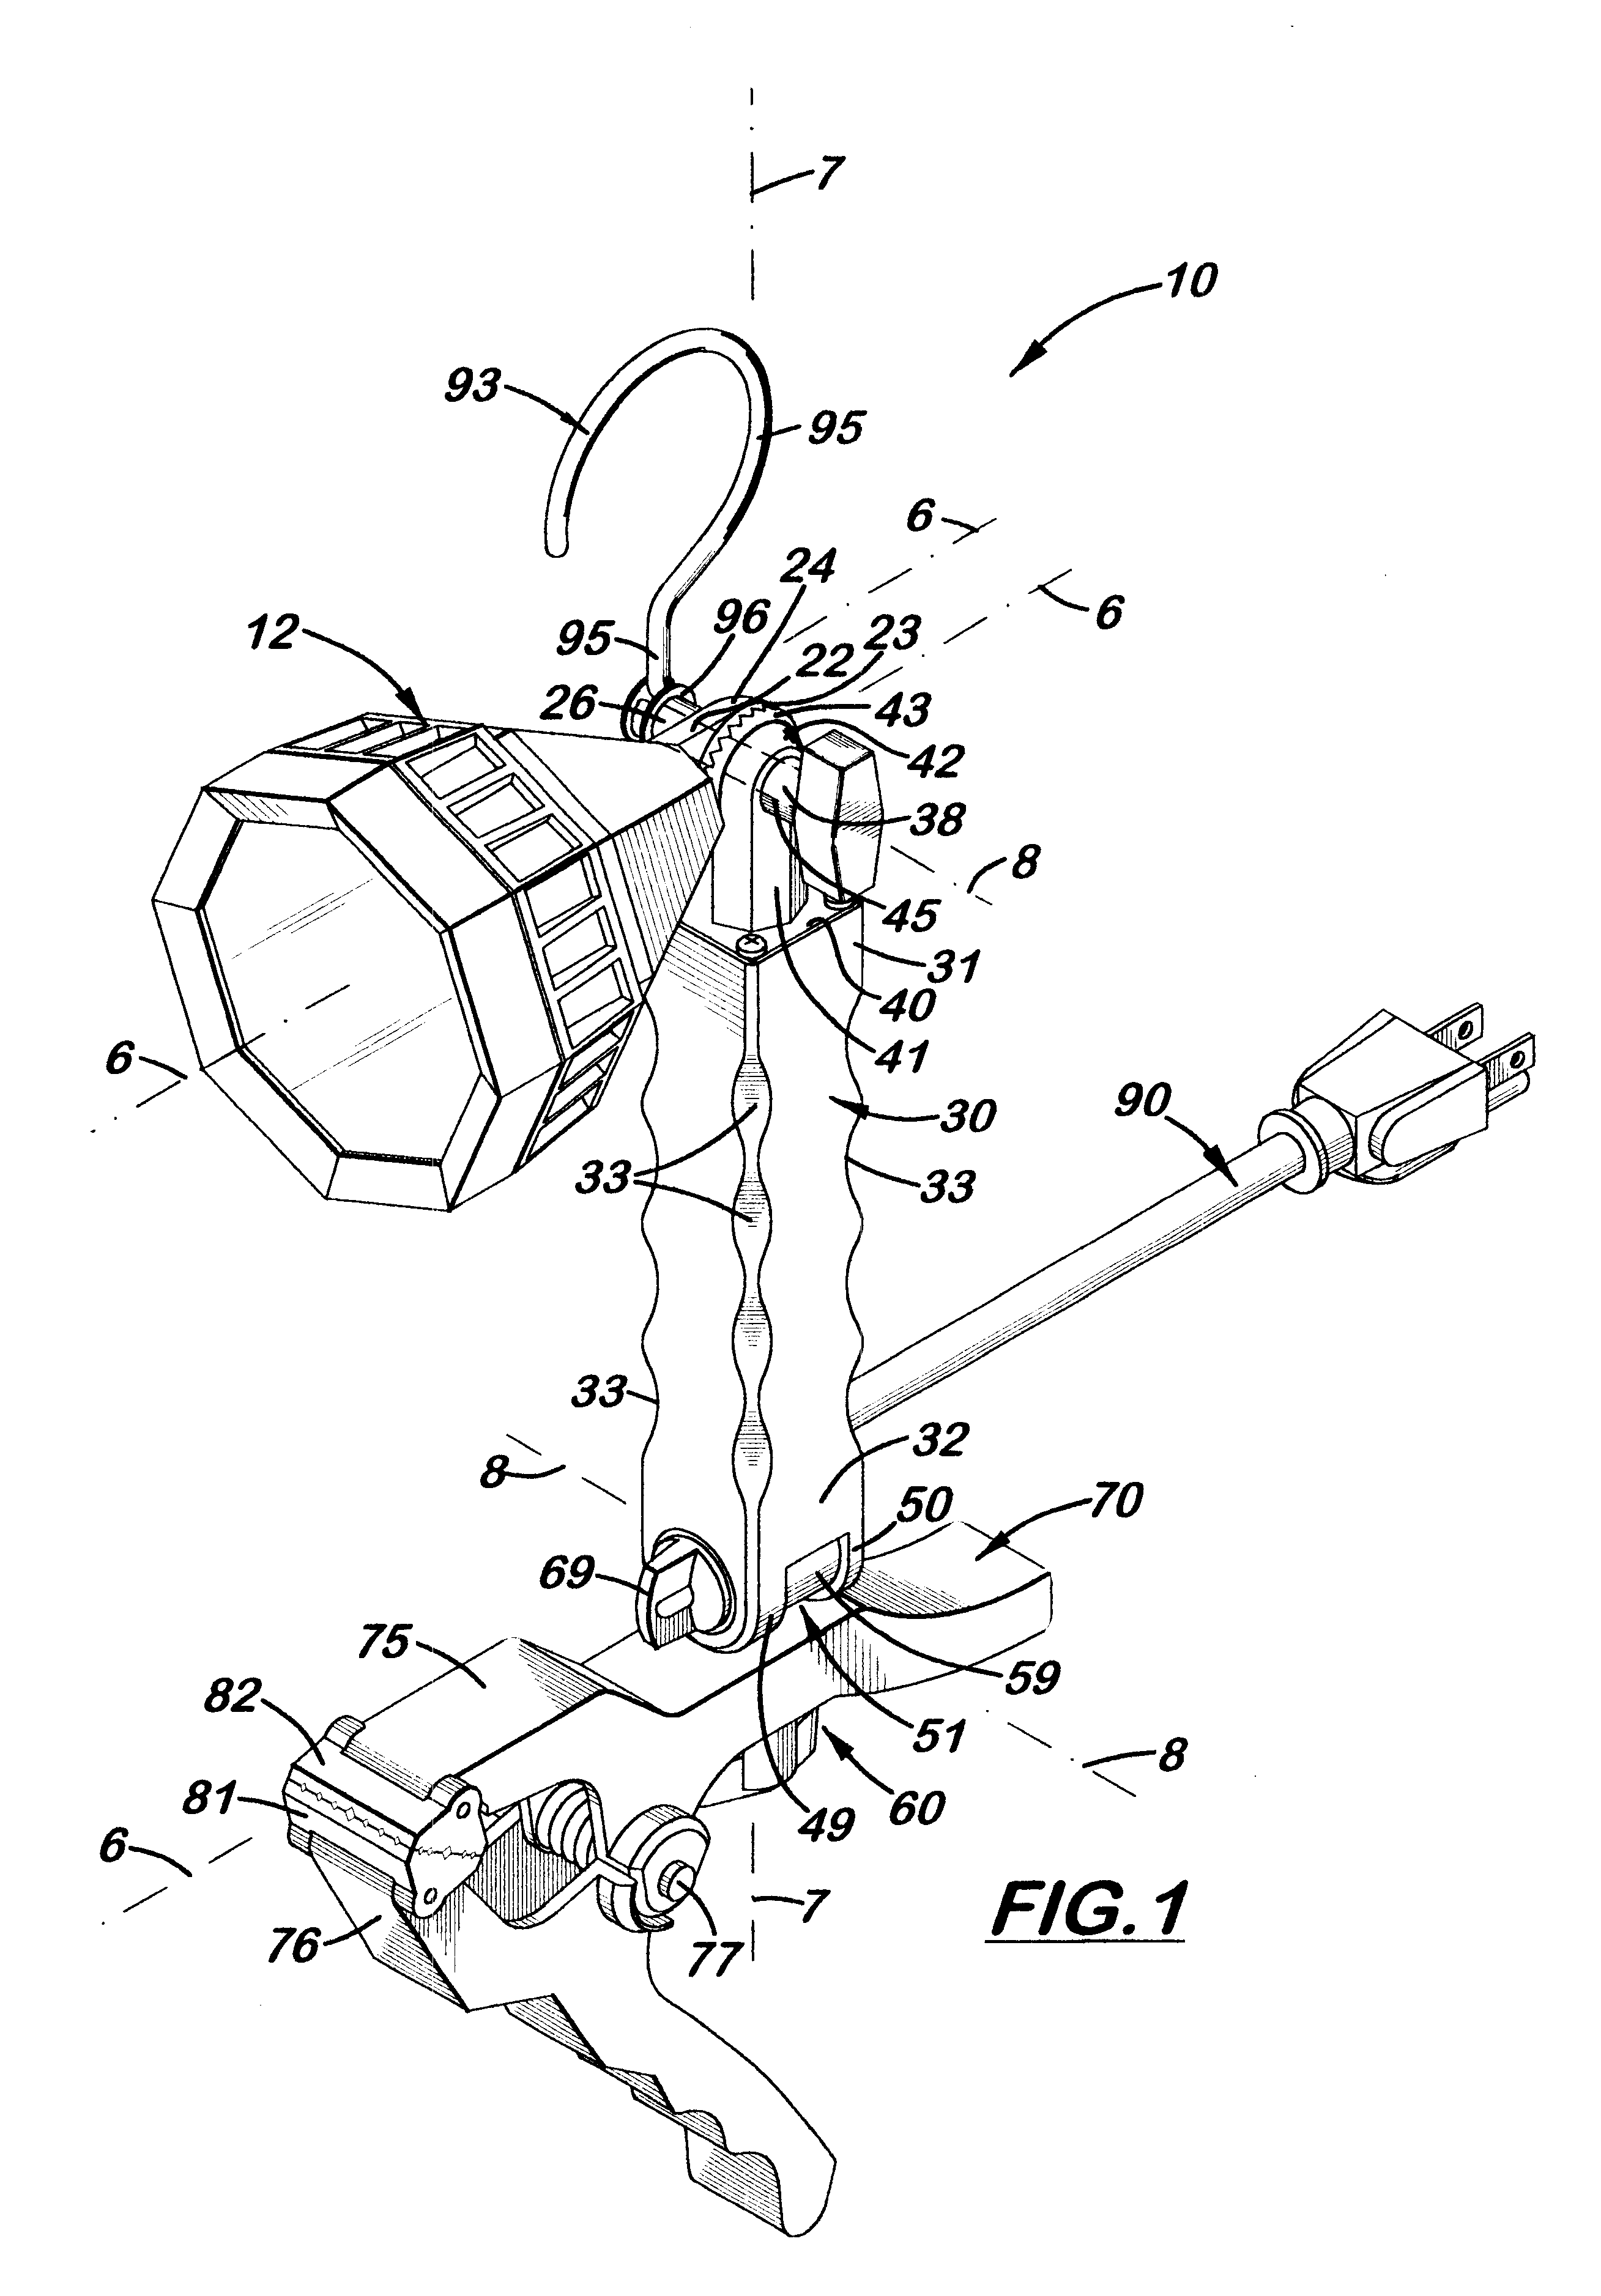 Multi-adjustable clamp work light